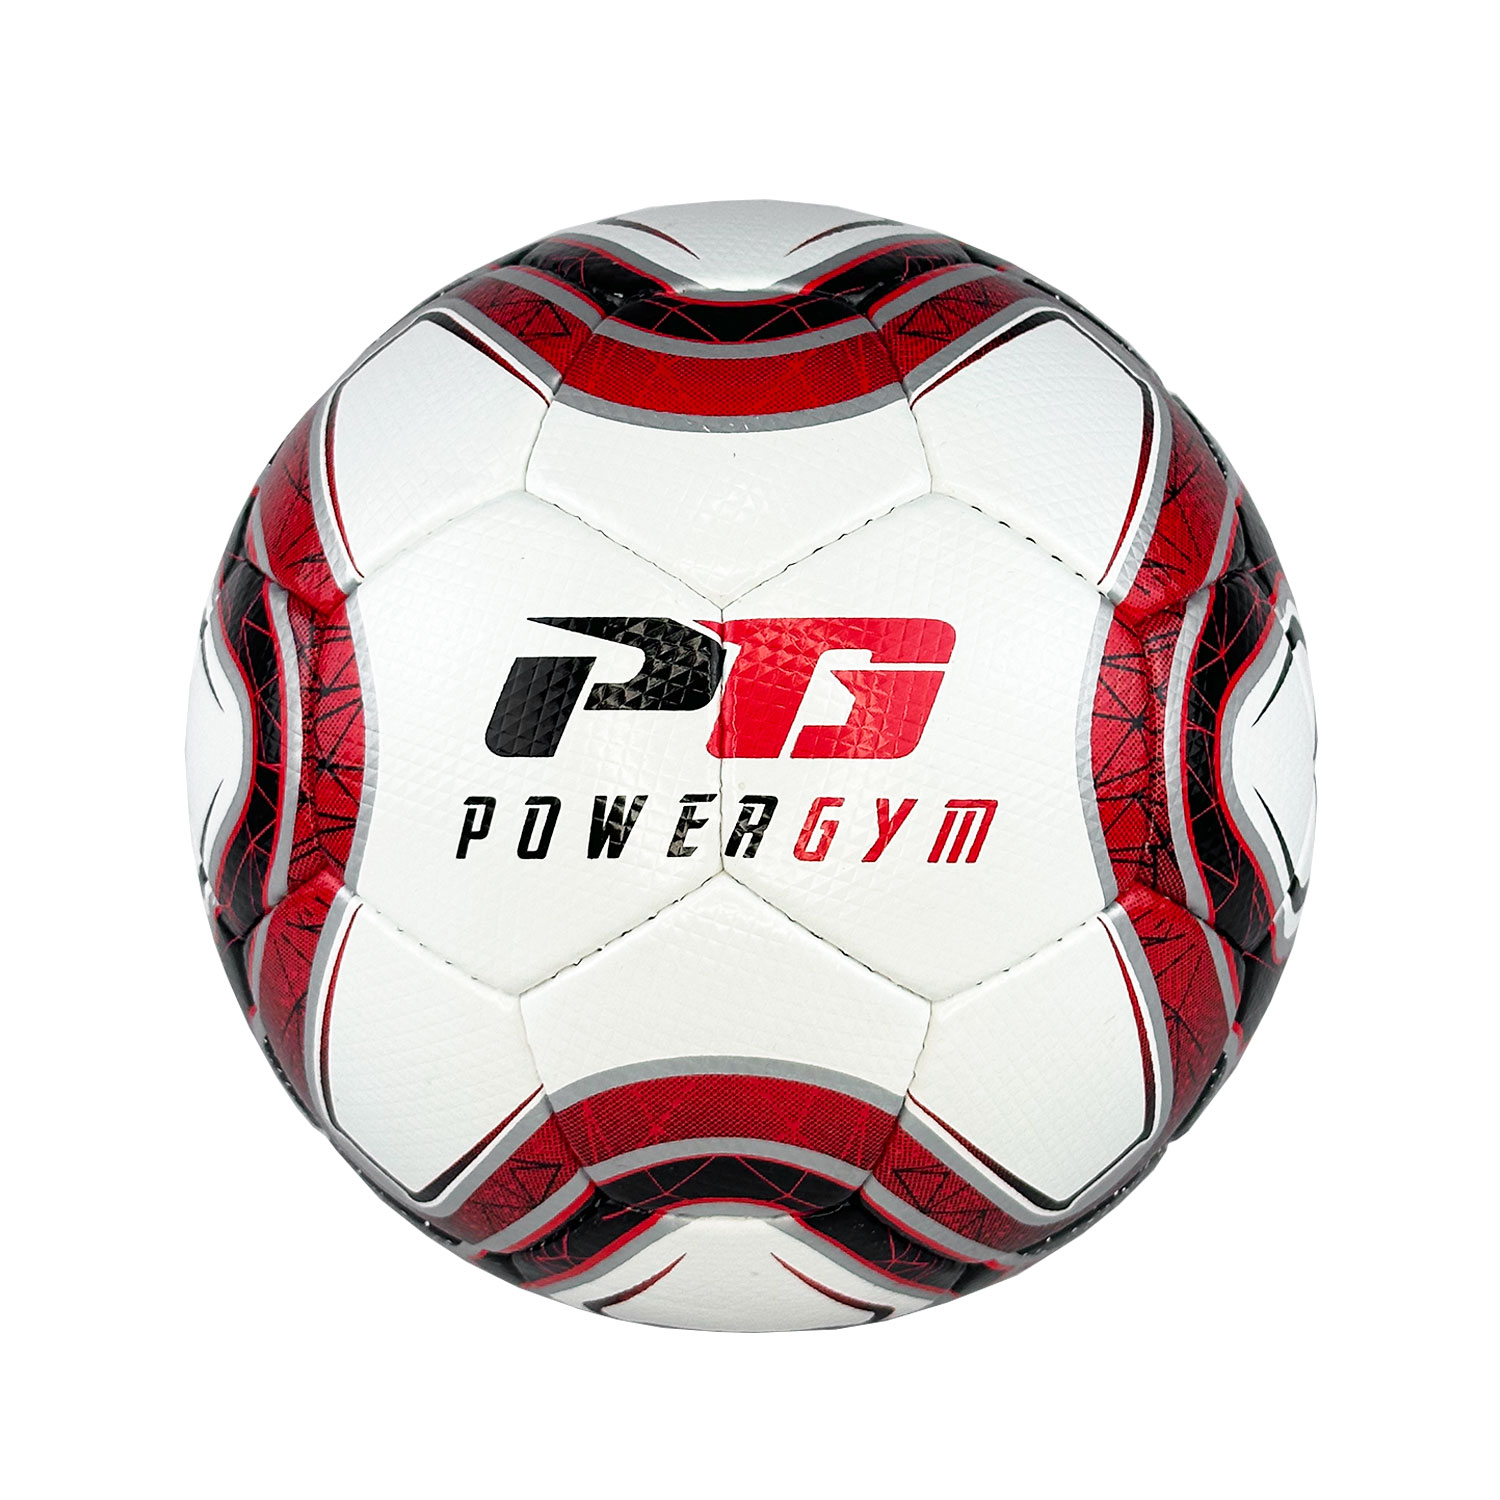 Лакированный футбольный мяч Powergym